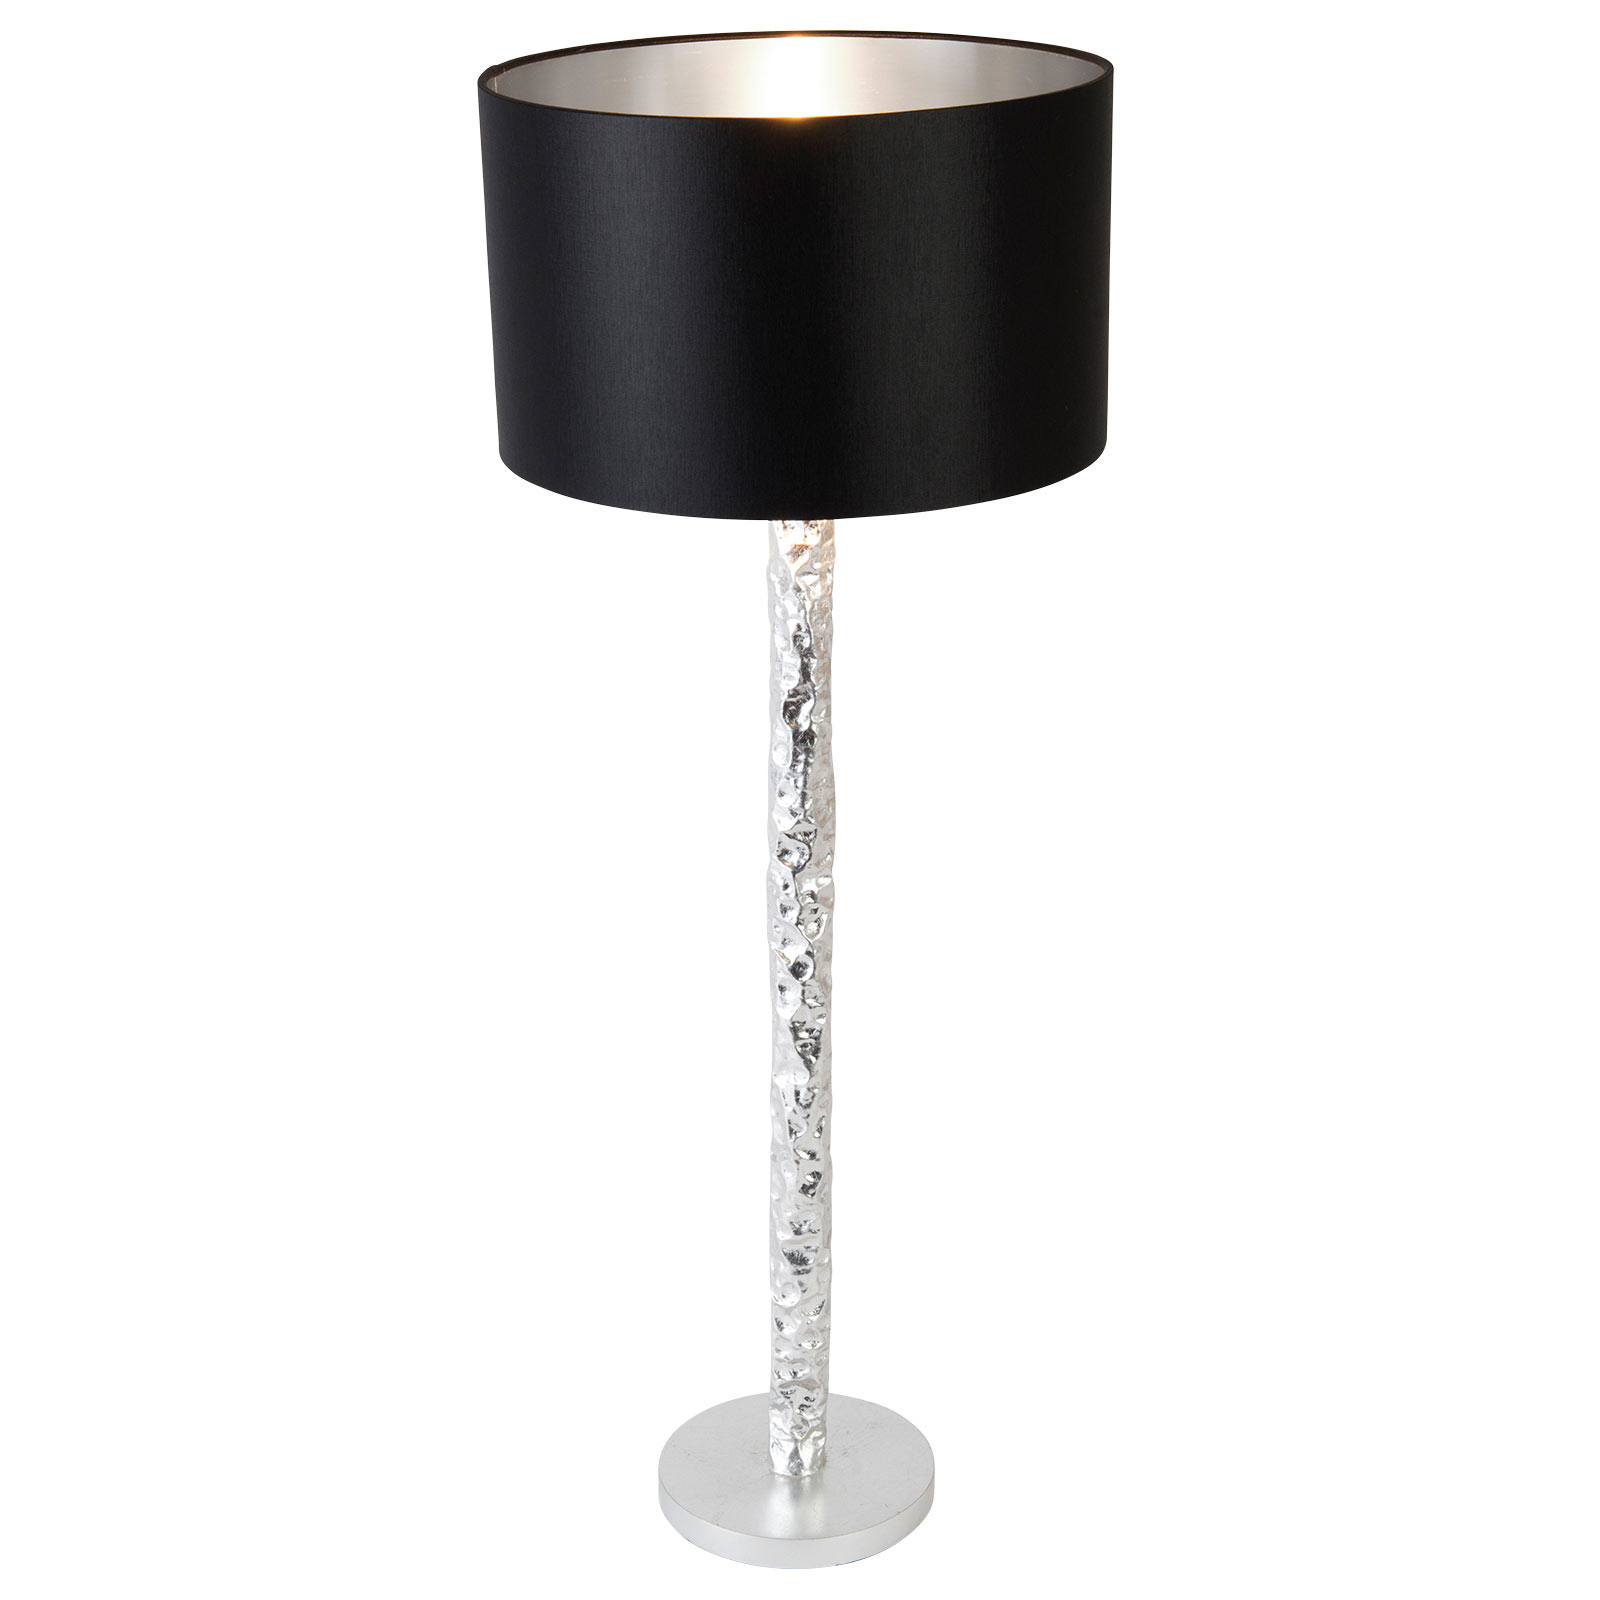 Cancelliere Rotonda table lamp black/silver 79cm